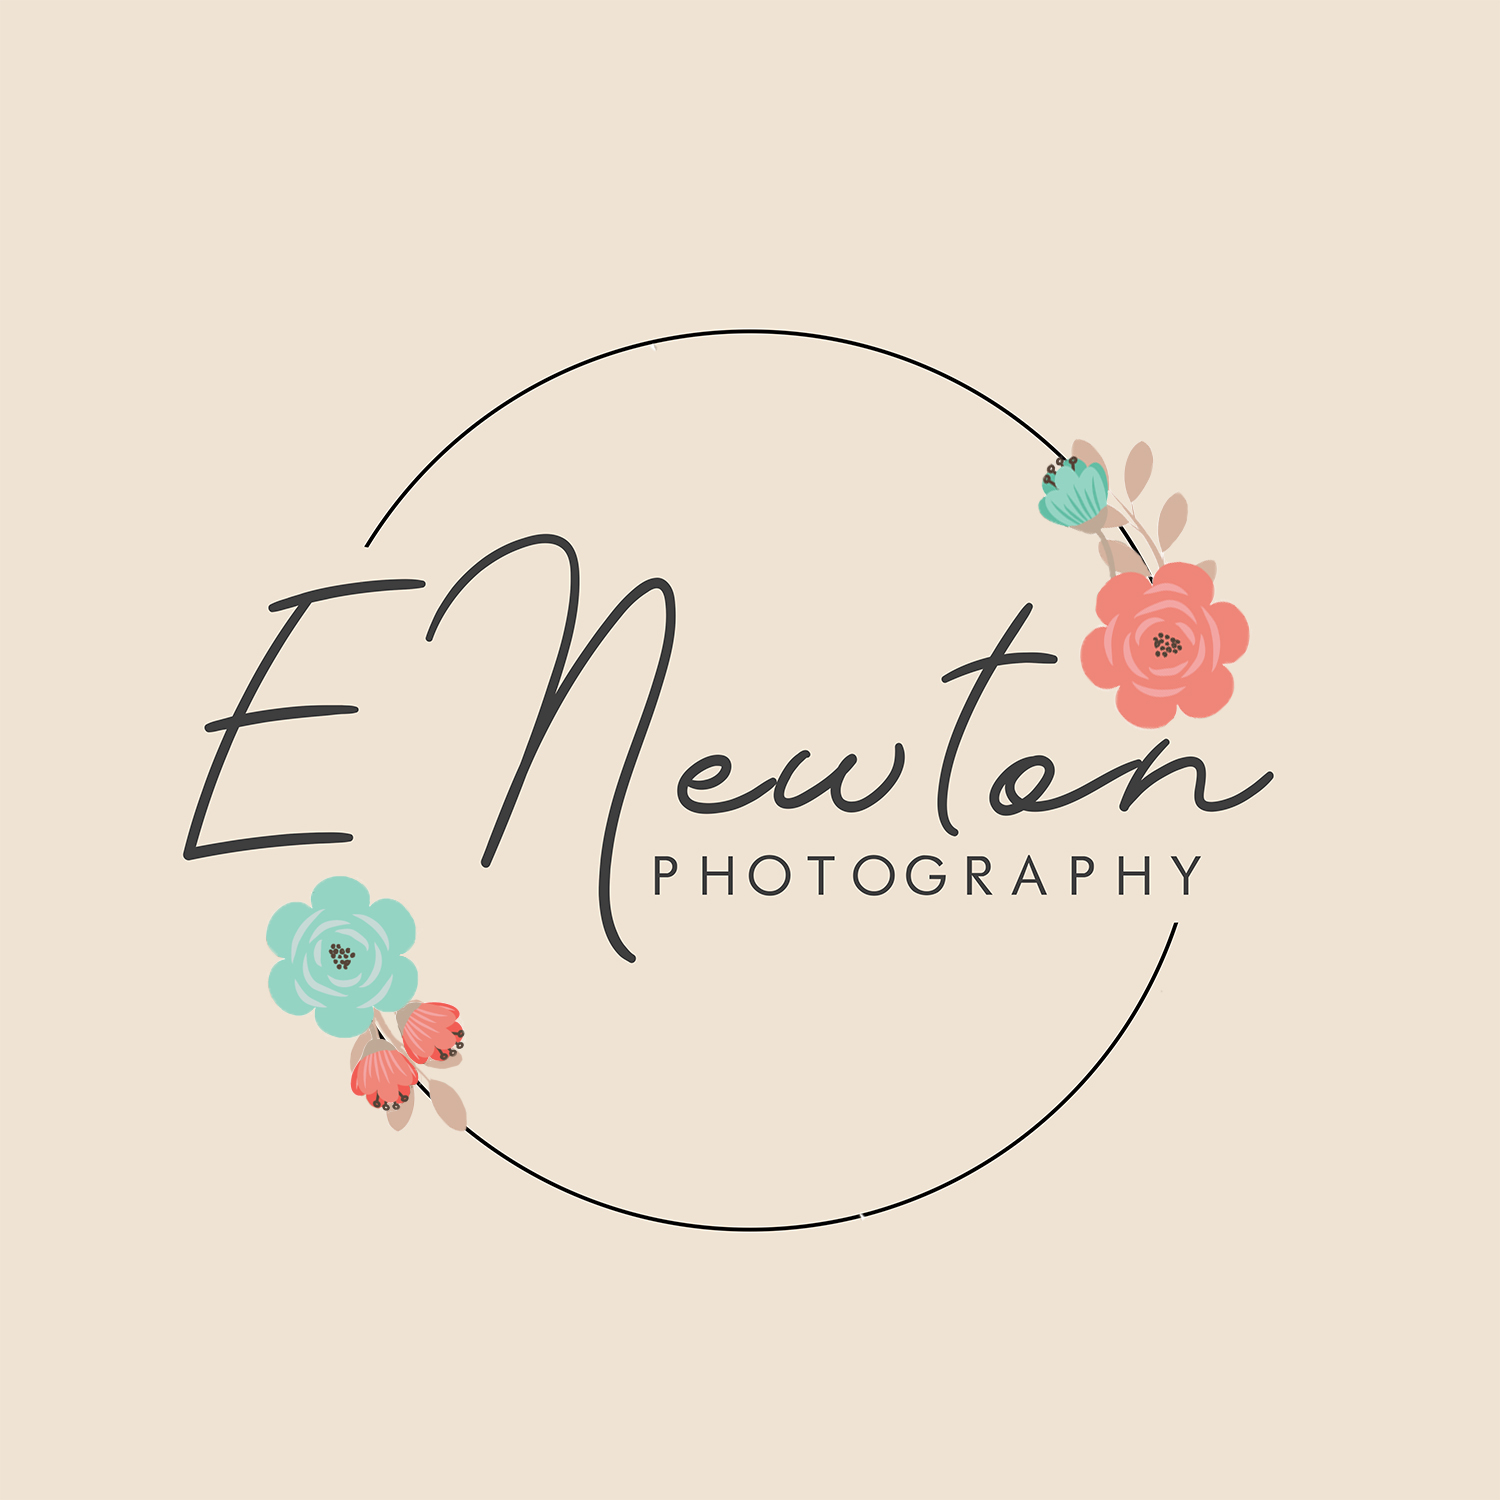 E Newton Photography's Logo